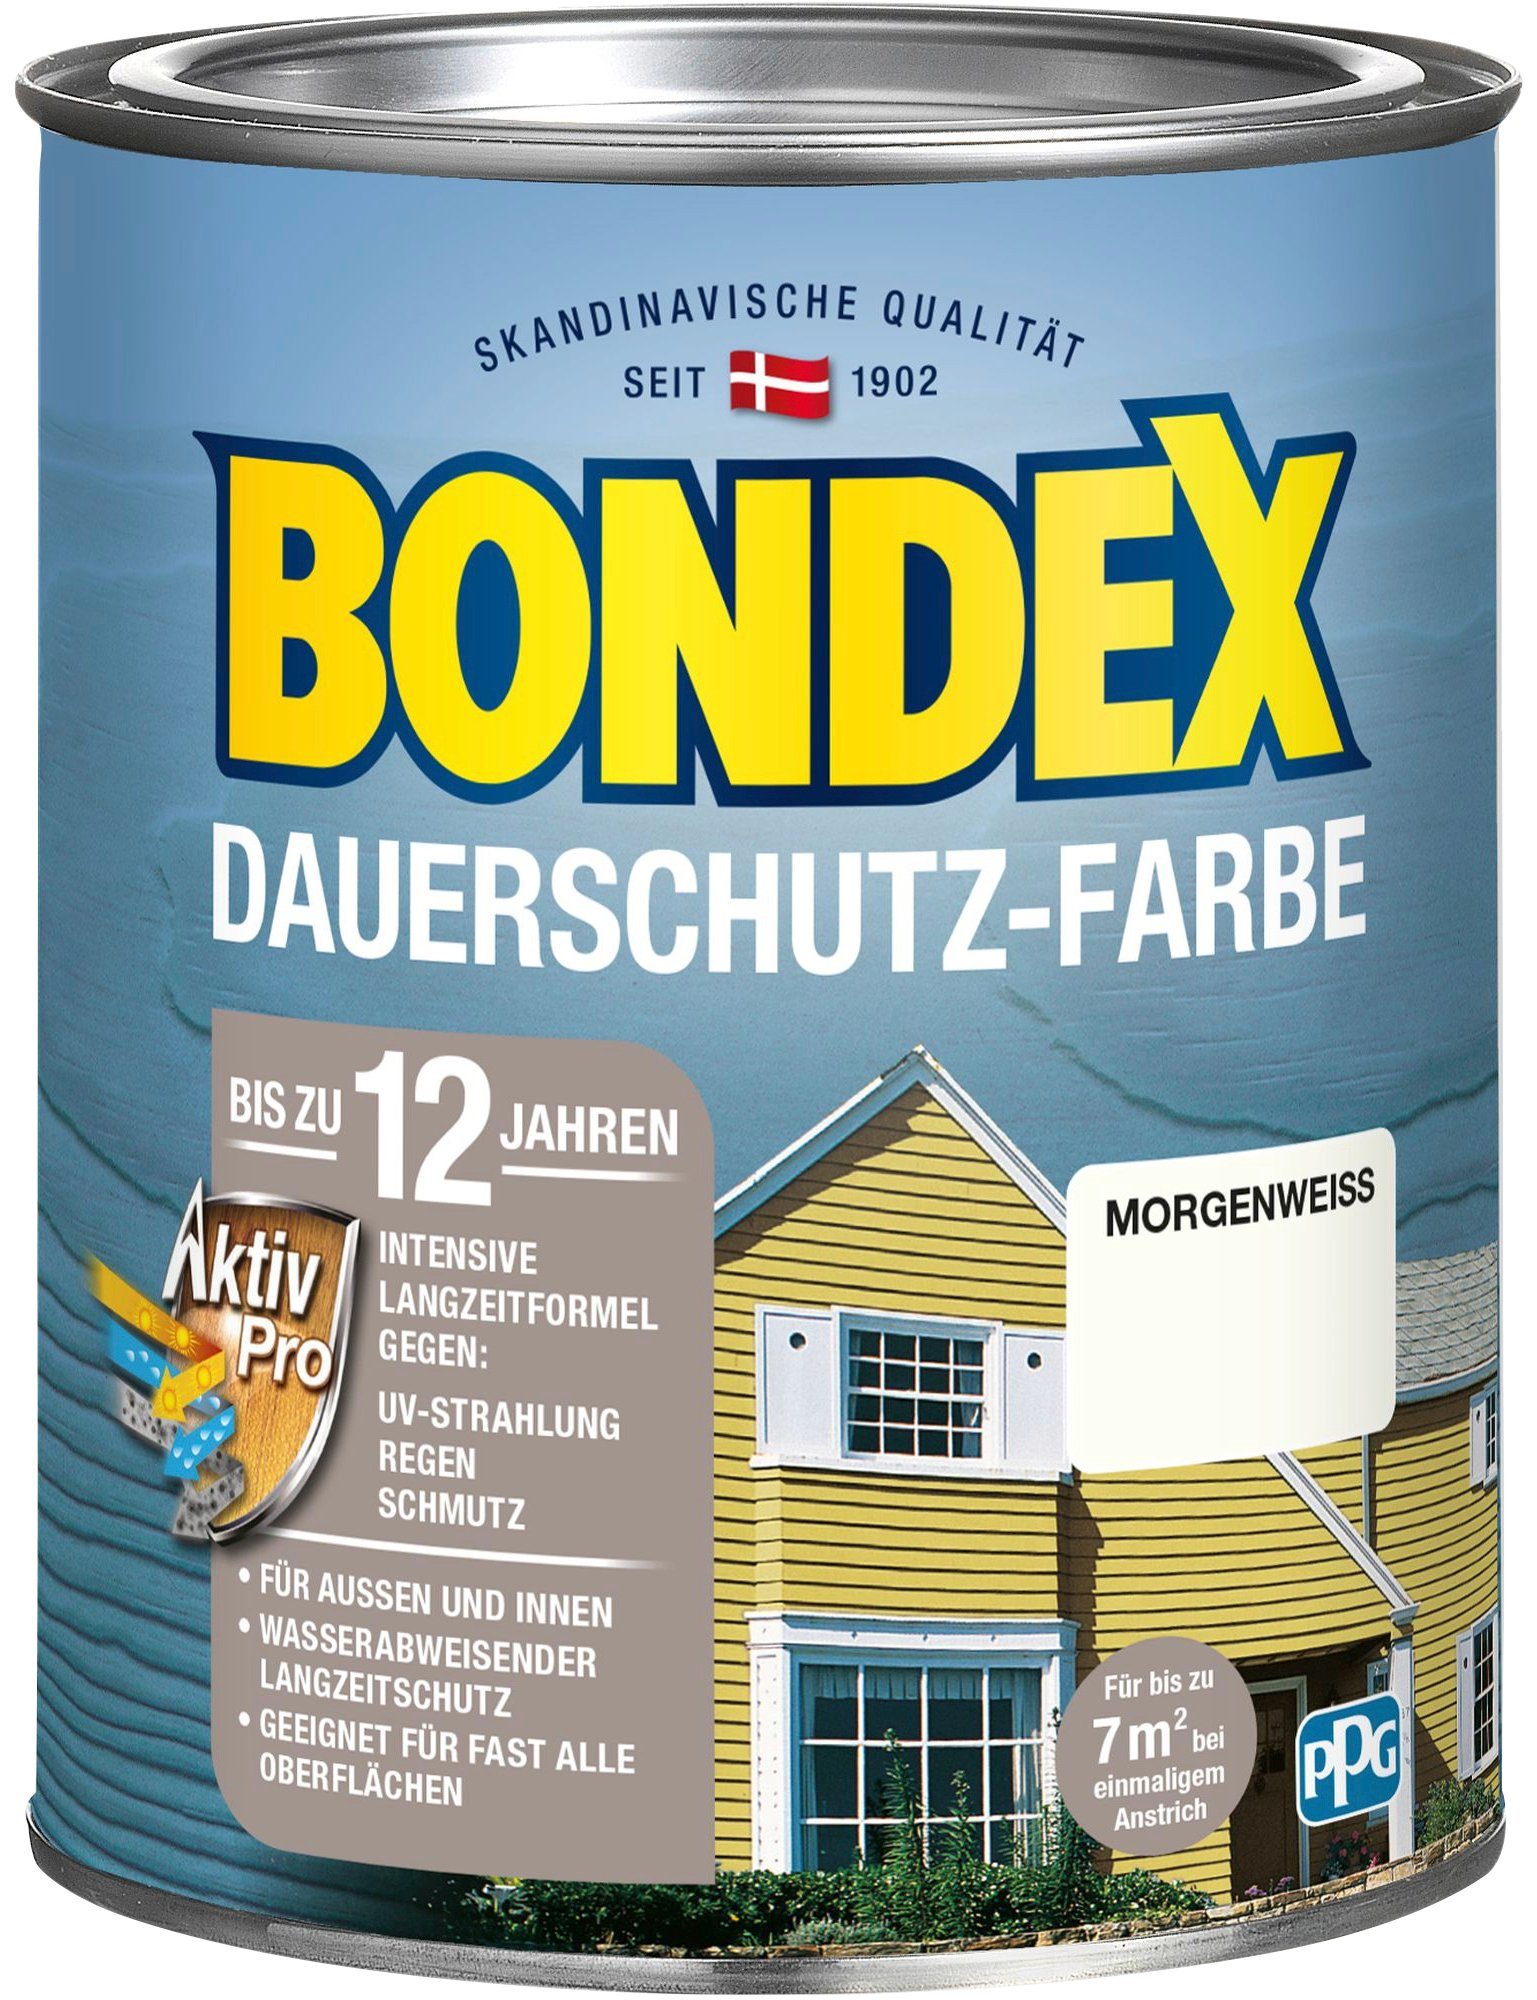 mit Morgenweiß Wetterschutz und Außen Wetterschutzfarbe Bondex für Langzeitformel Innen, DAUERSCHUTZ-FARBE, Pro Aktiv